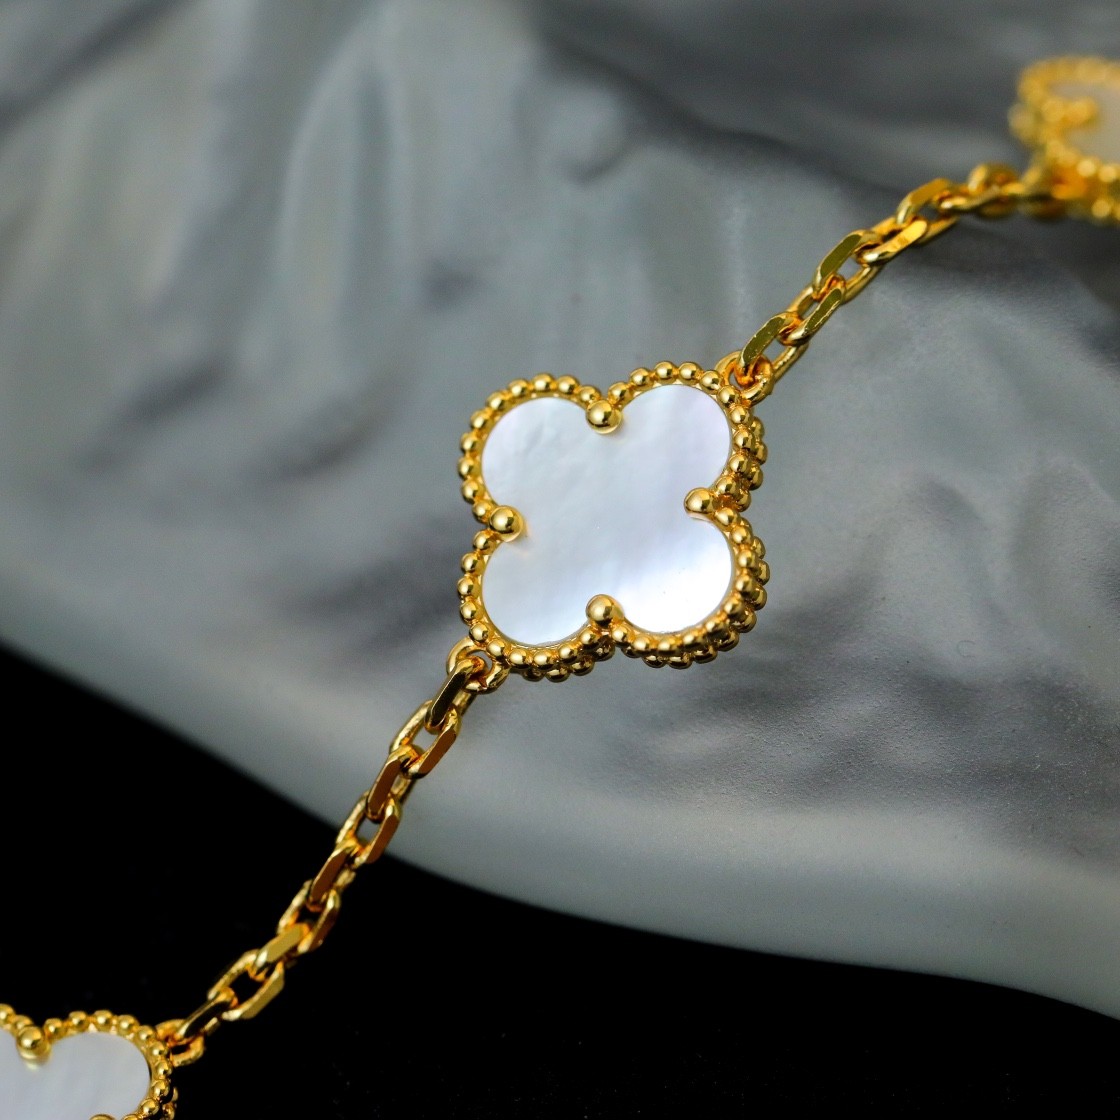 Van Cleef & Arpels Vintage Alhambra Bracelet, 5 Motifs , Mother-